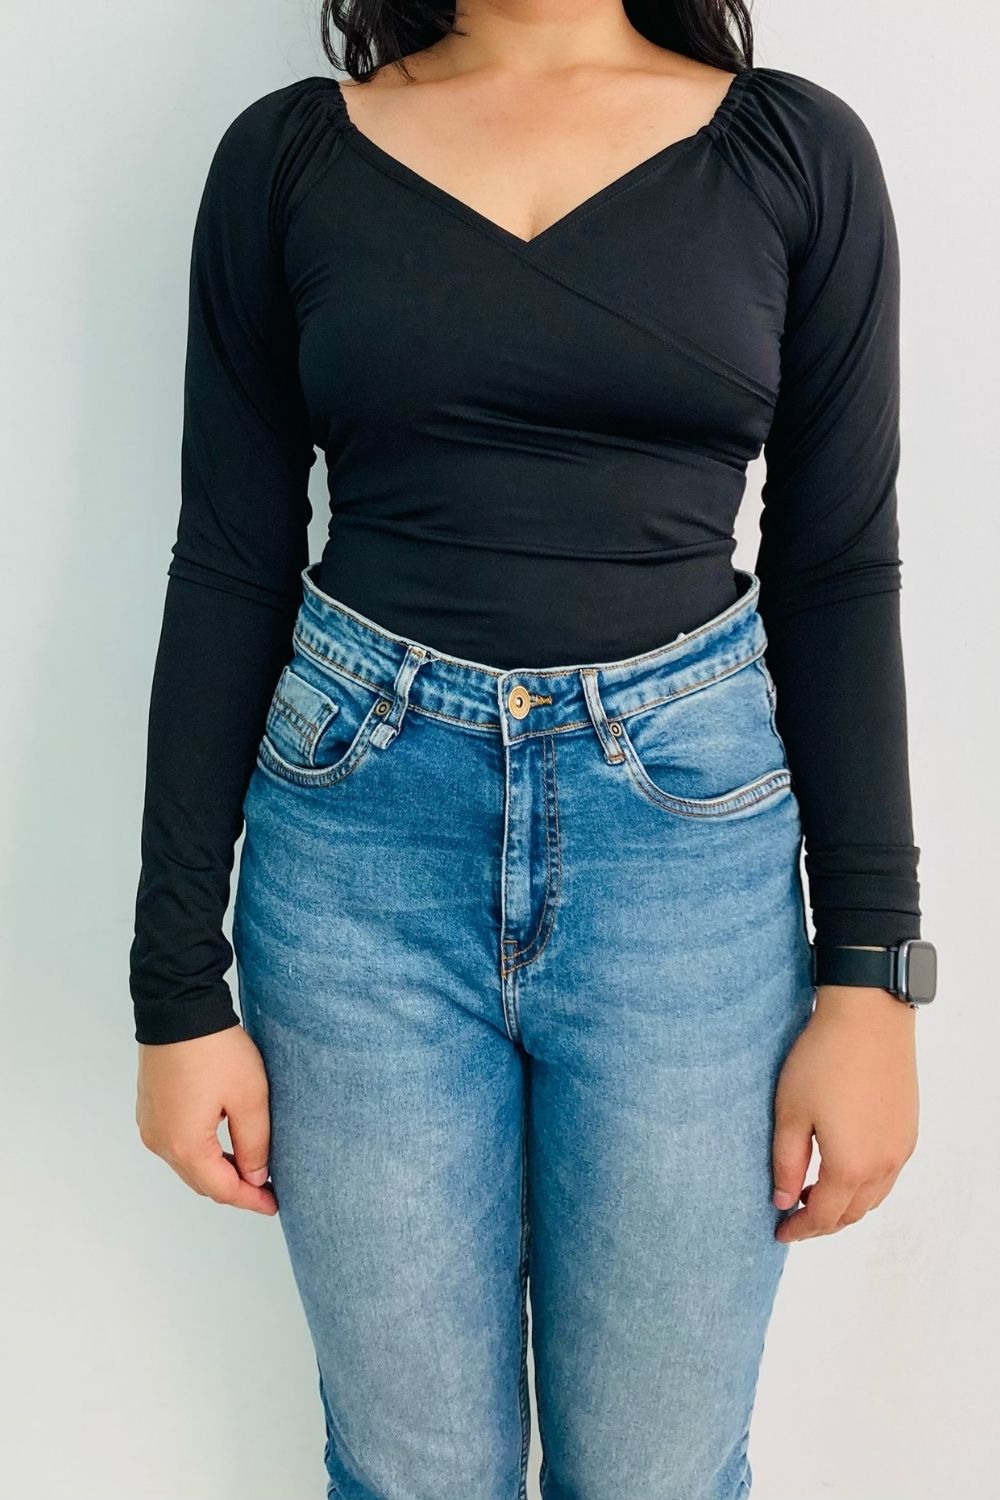 Black Long Sleeve Neck Bodysuit – Styched Fashion